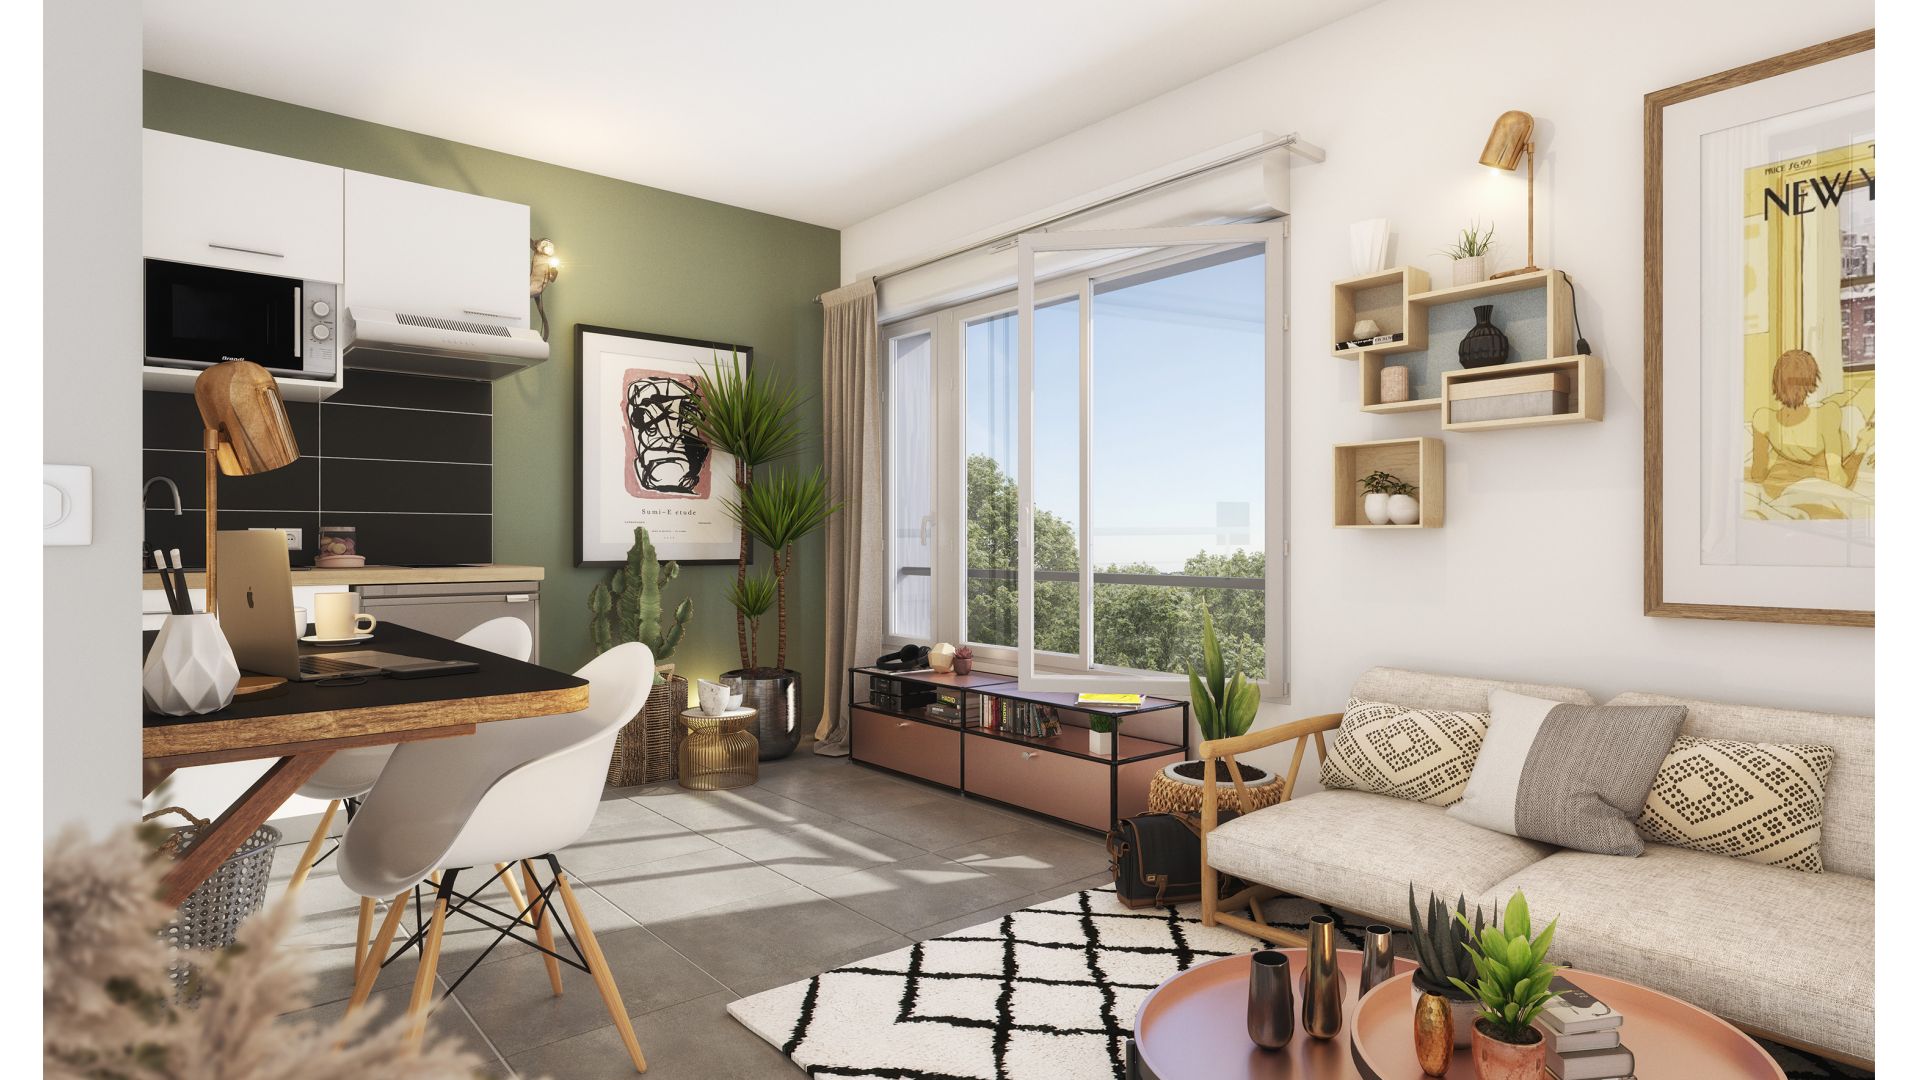 Greencity immobilier - achat appartements neufs du T1 au T3 - Résidence co-living - Résidence Parc Perosa - 73000 Chambéry  